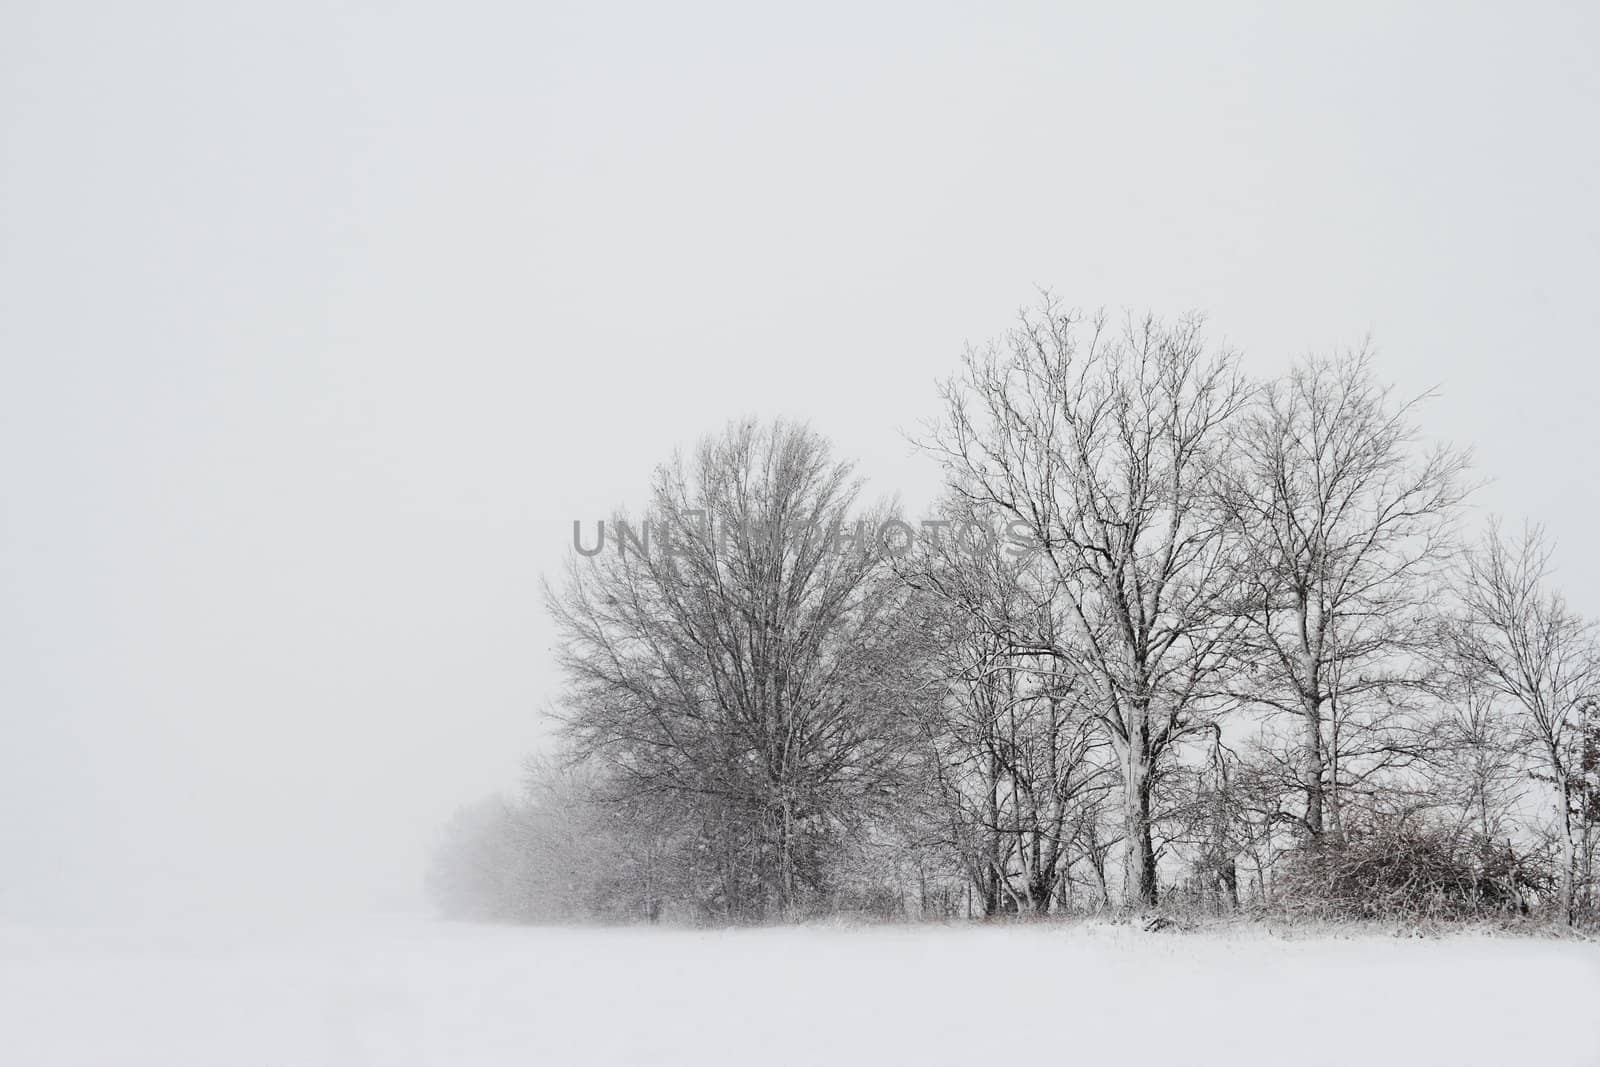 Trees visible through a dense snow storm.